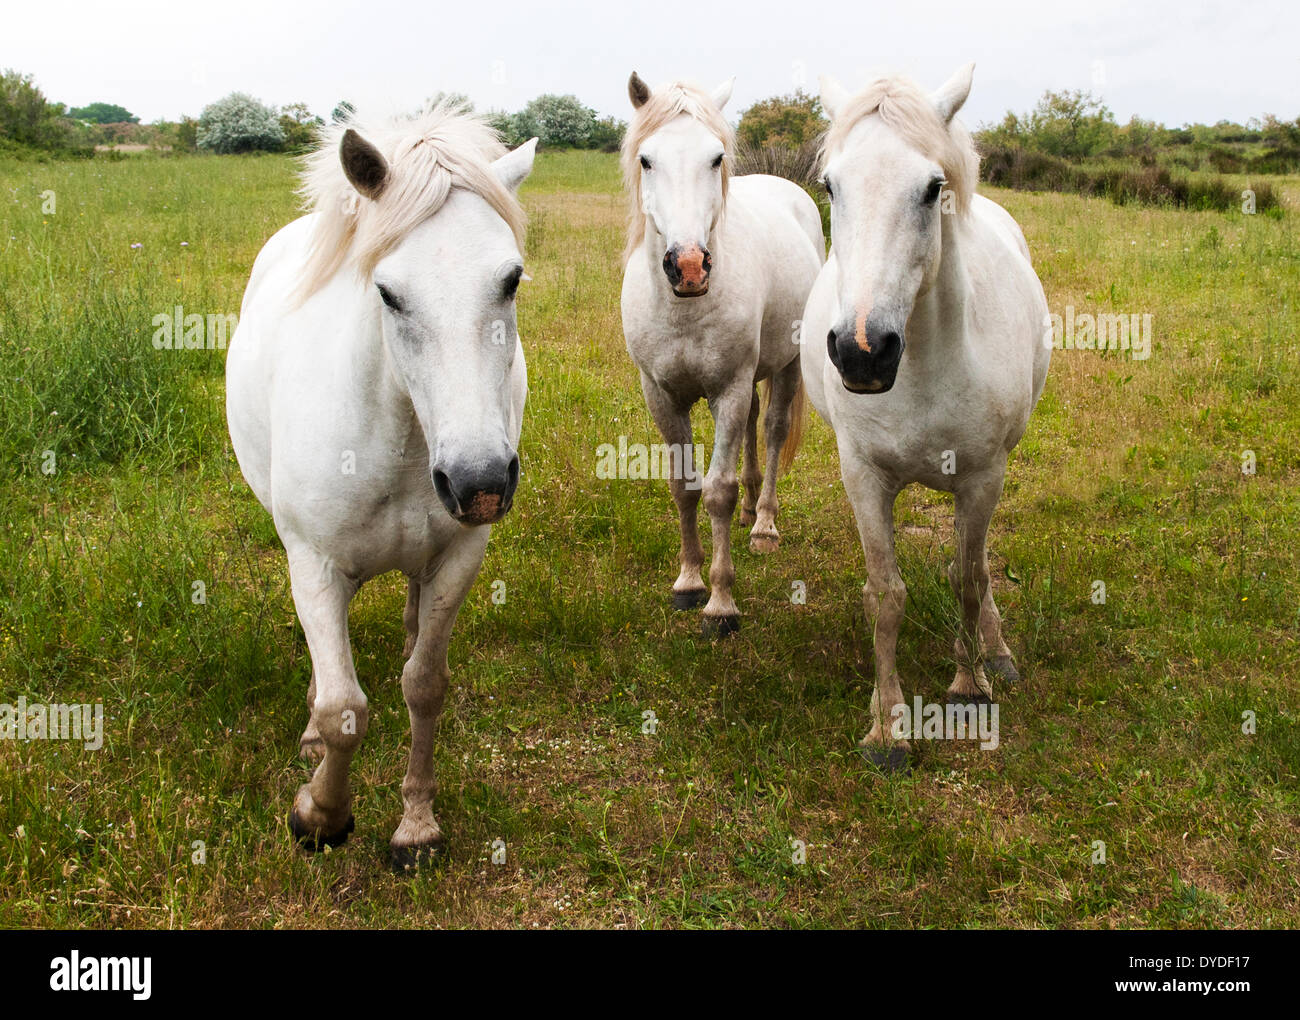 White horses of Camargue. Stock Photo